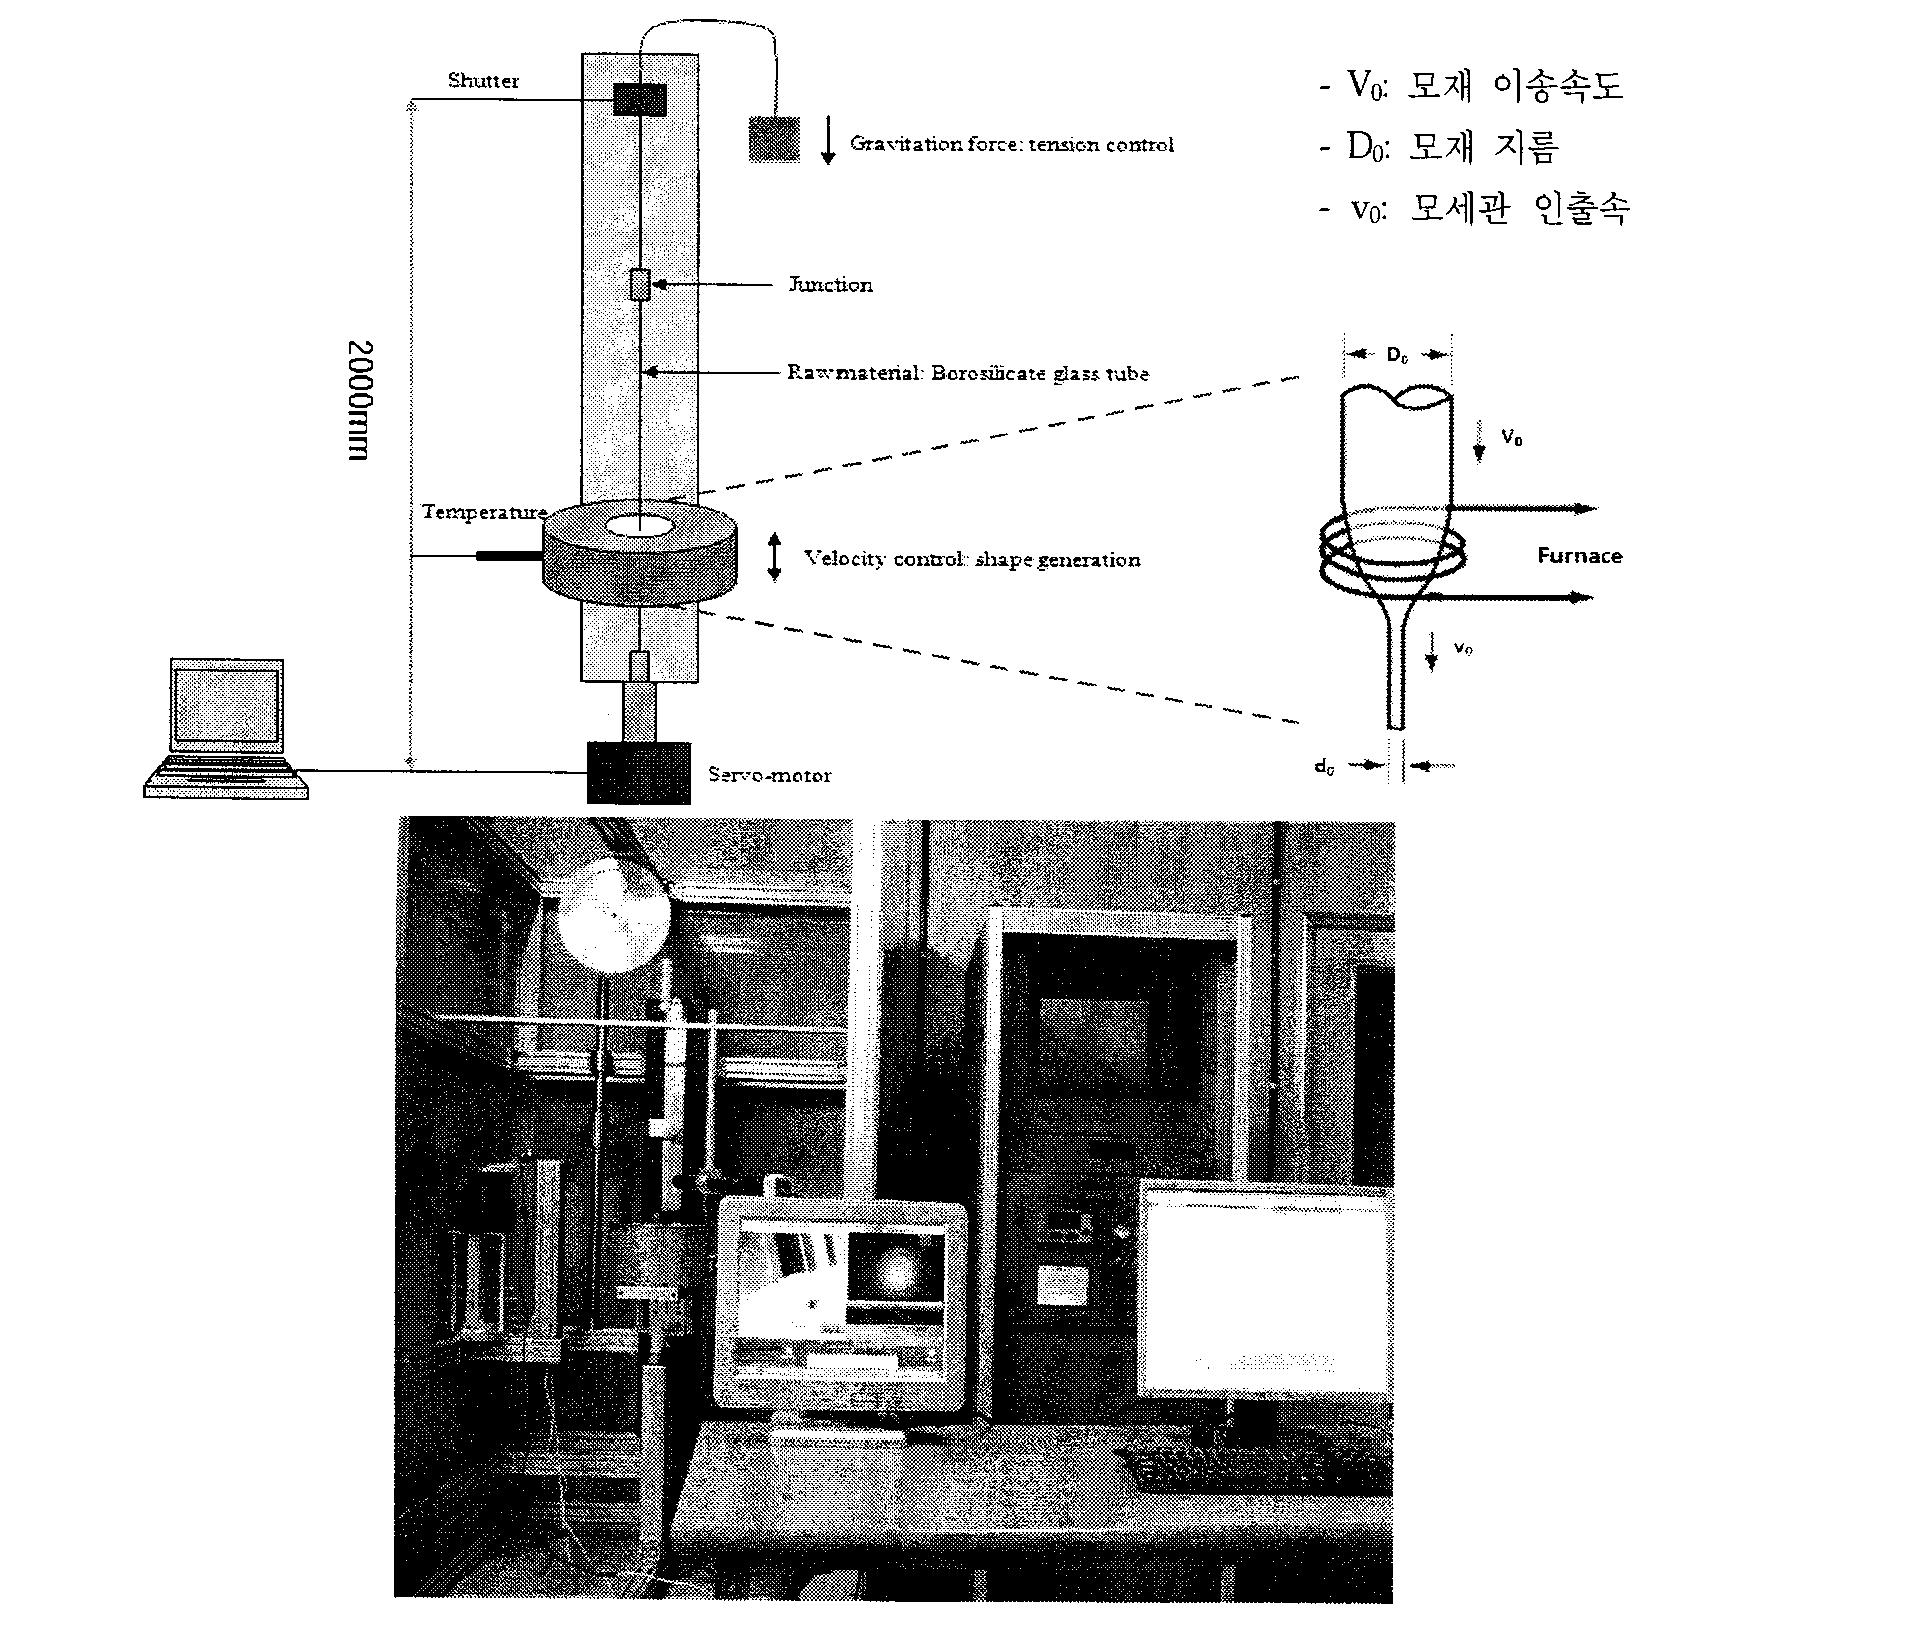 모세관 광학소자 제작 장치 개념 설계와 제작된 사진